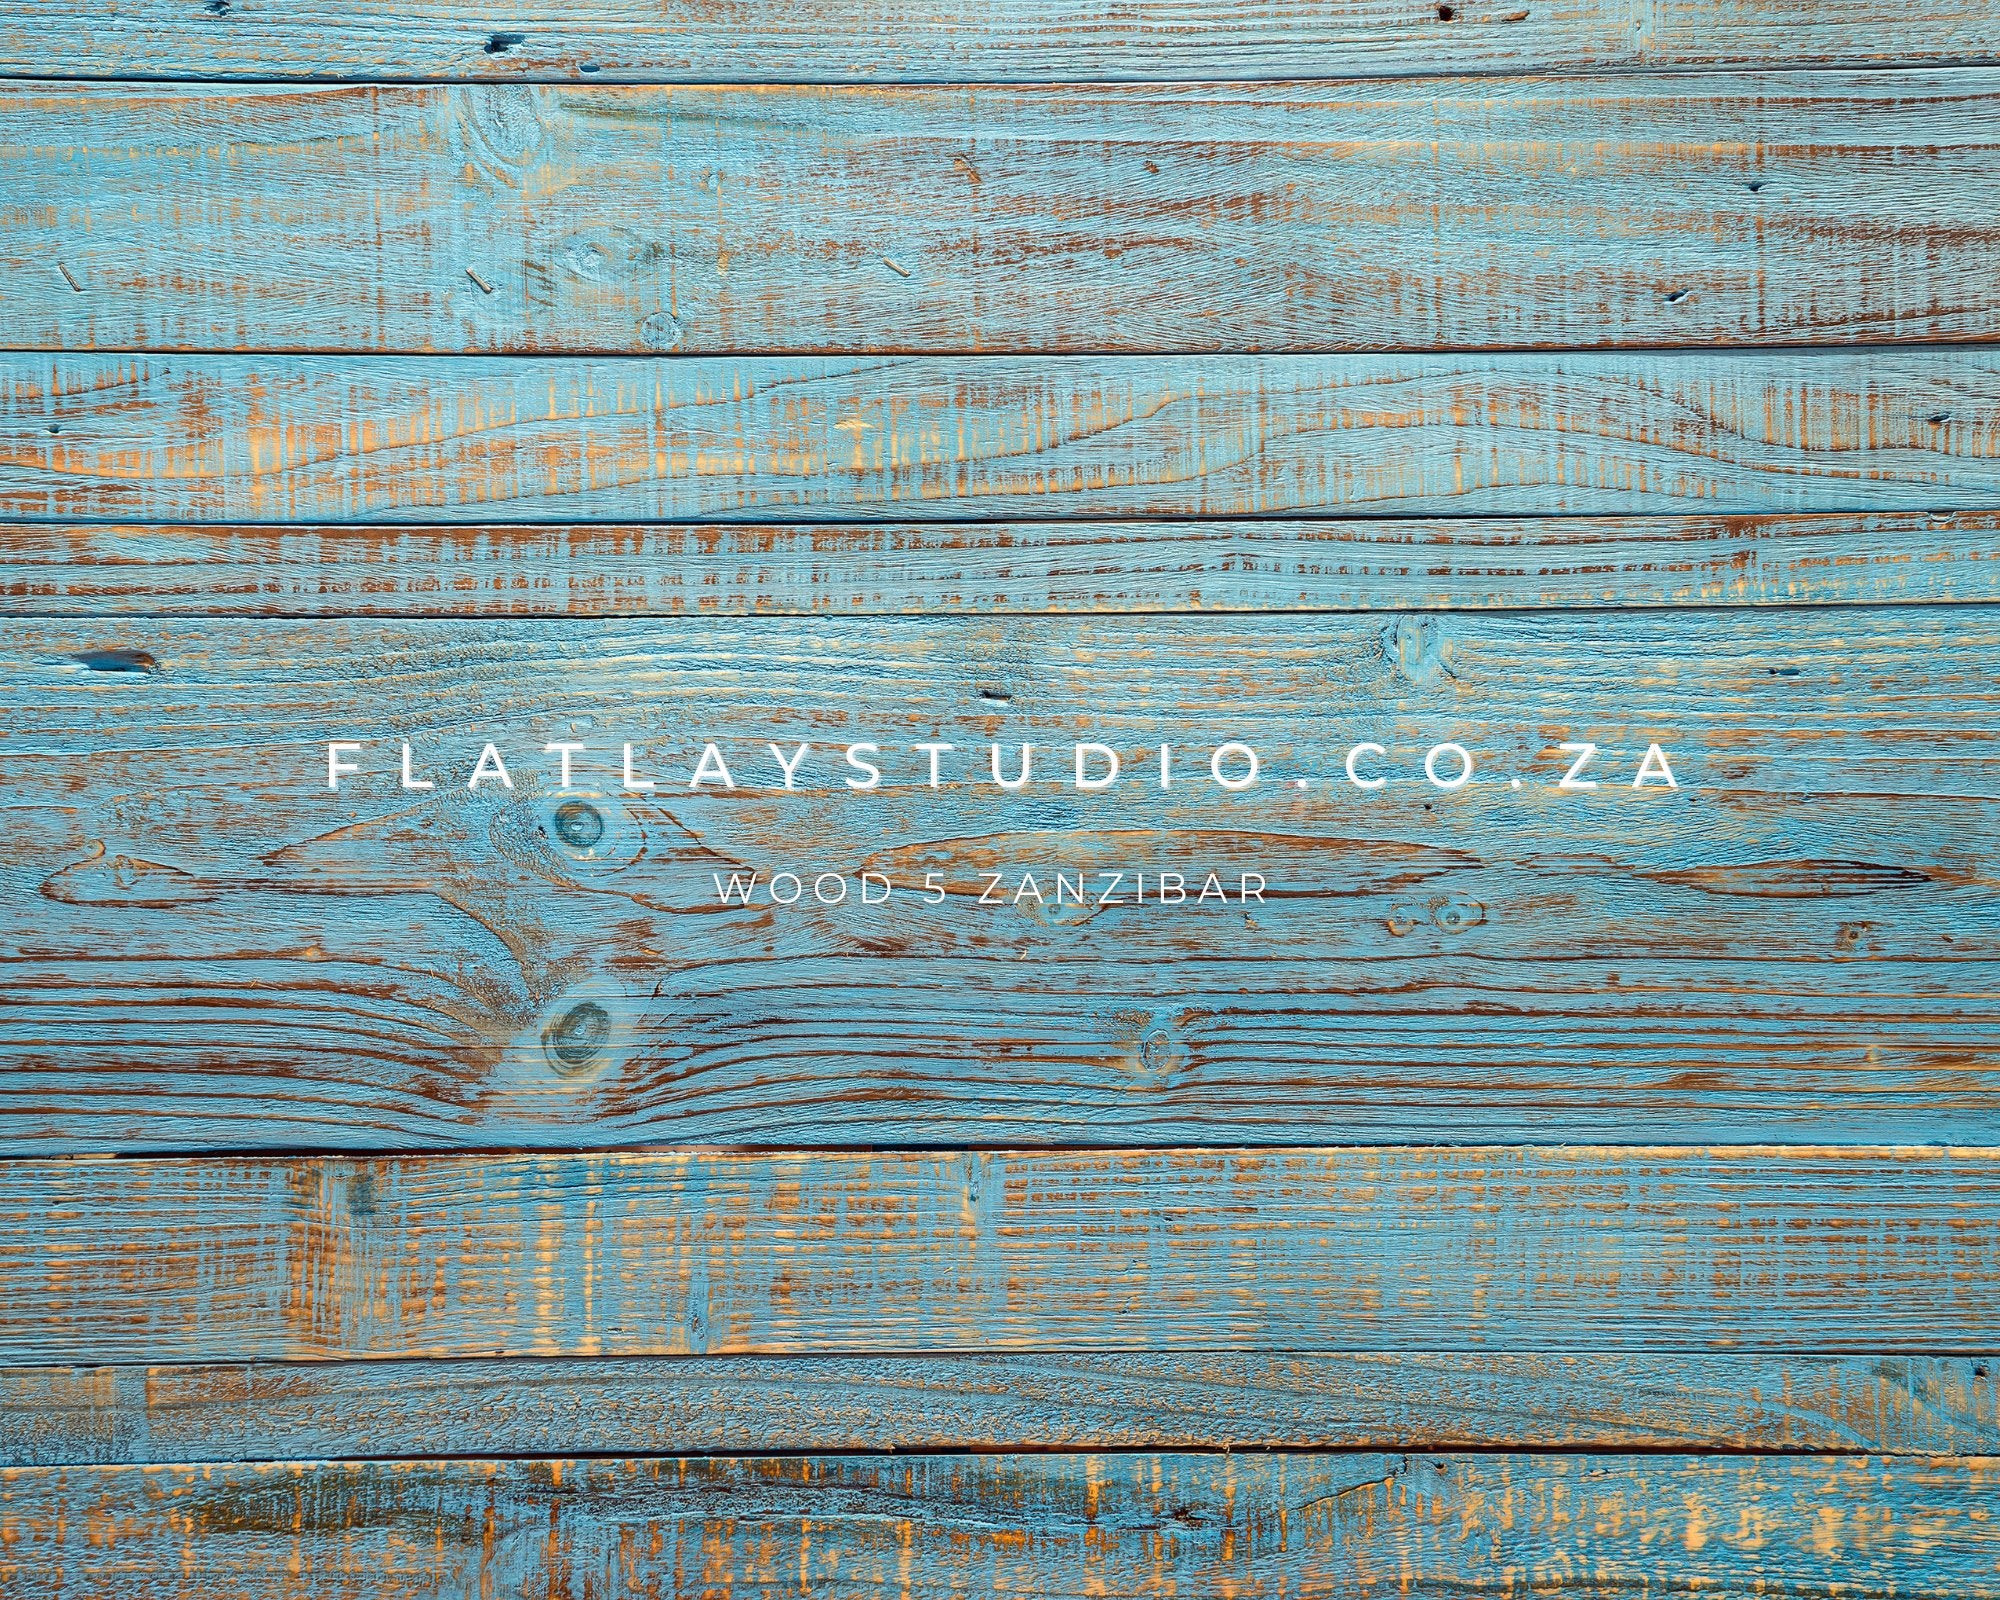 Wood 5 Zanzibar - FlatlayStudio Flatlay Styling Board